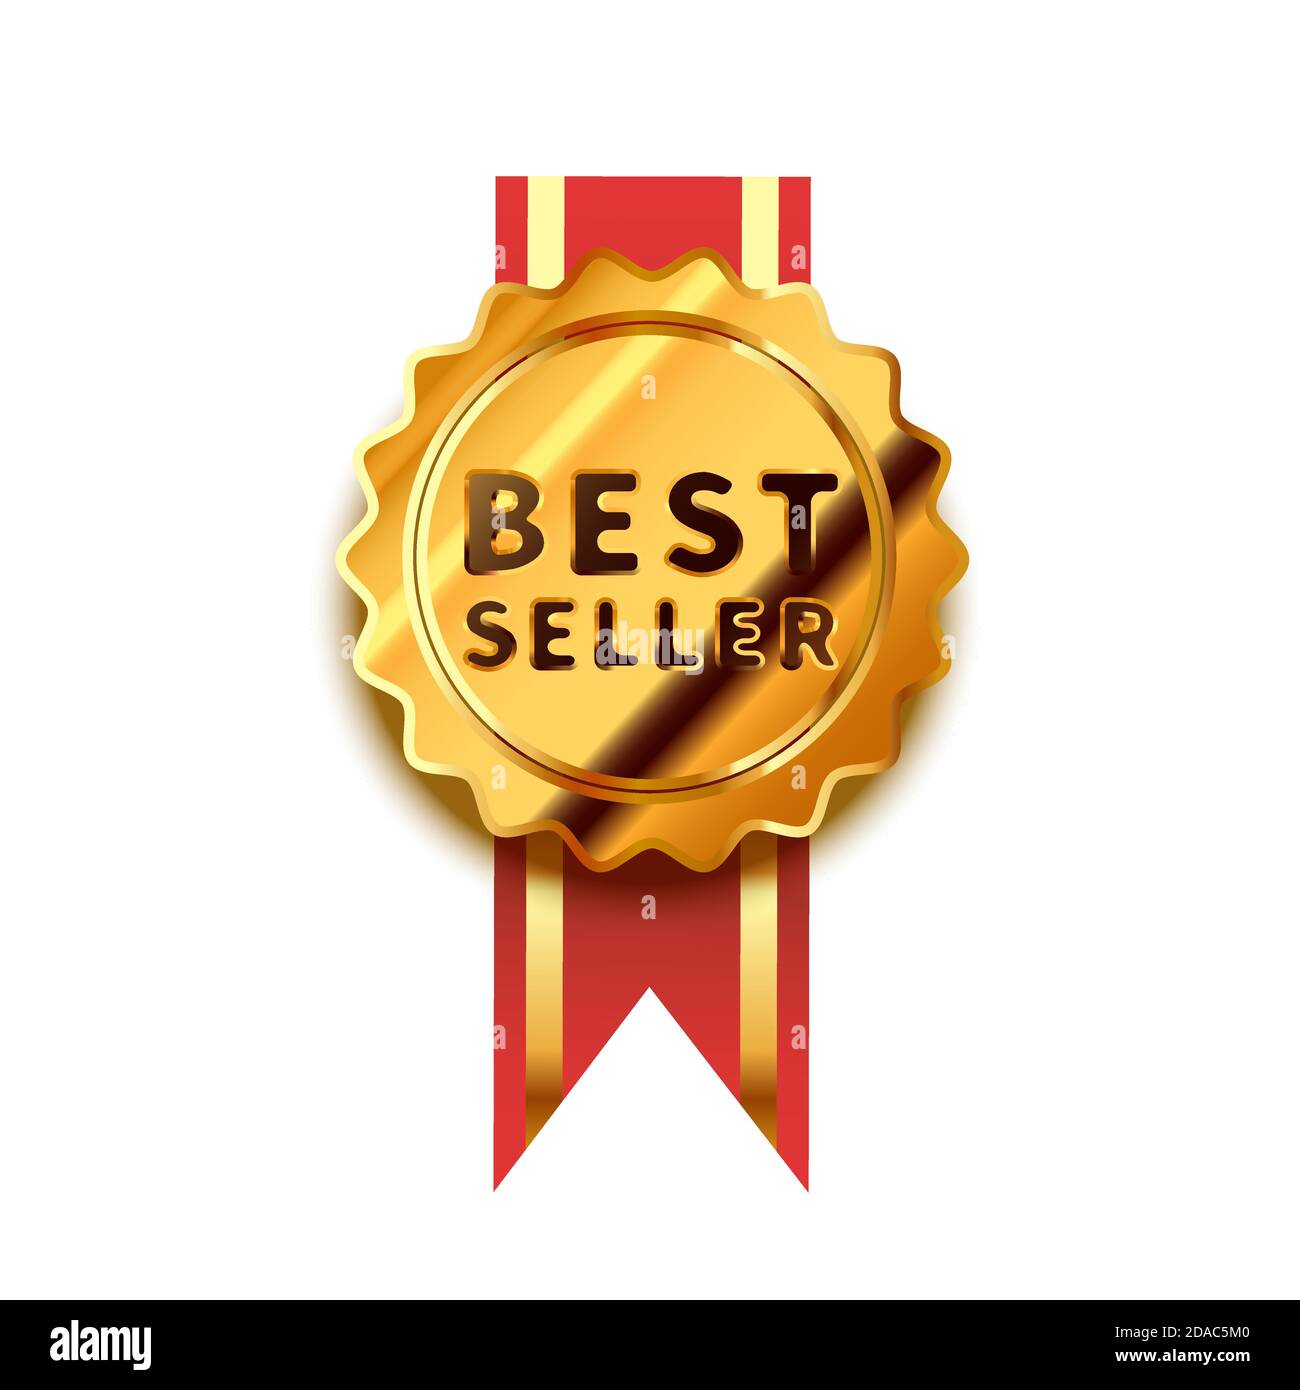 Leuchtendes goldenes Abzeichen mit rotem Band, glänzendes Bestseller-Symbol auf Weiß Stock Vektor